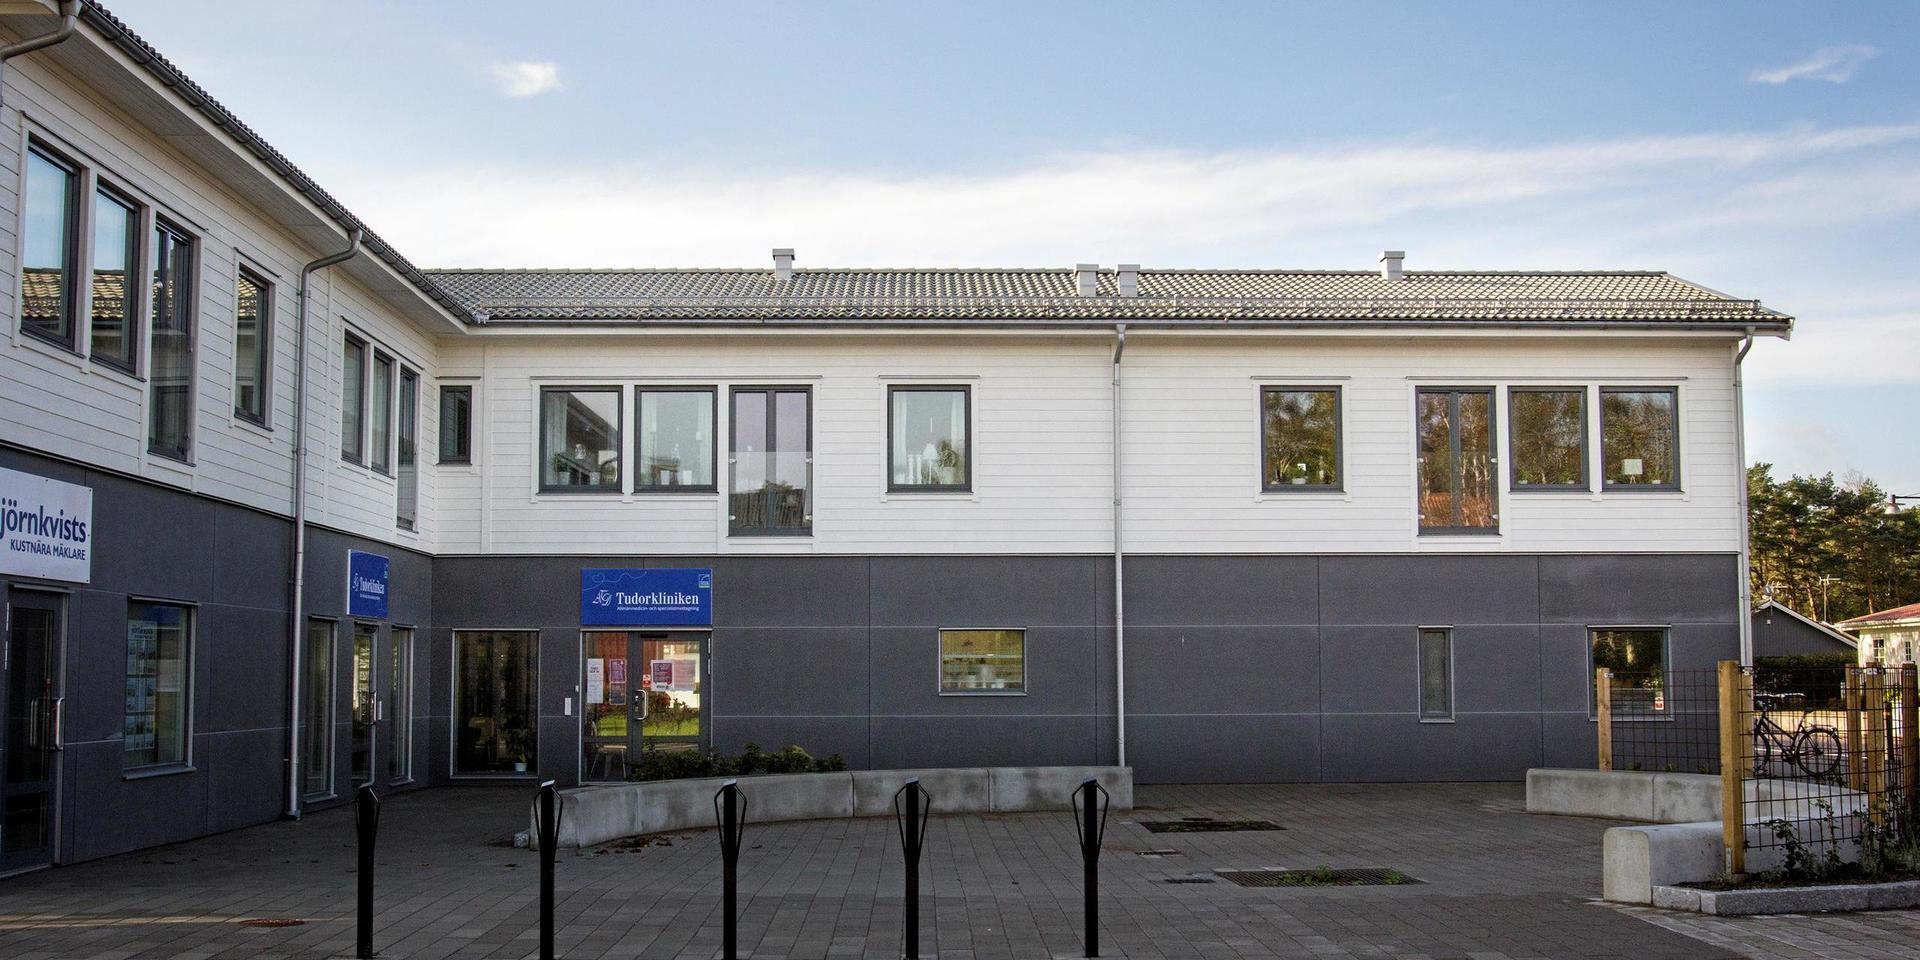 Tudorklinikens filial flyttade i början av året till större lokaler i det nybyggda centrumhuset i Skummeslövsstrand.